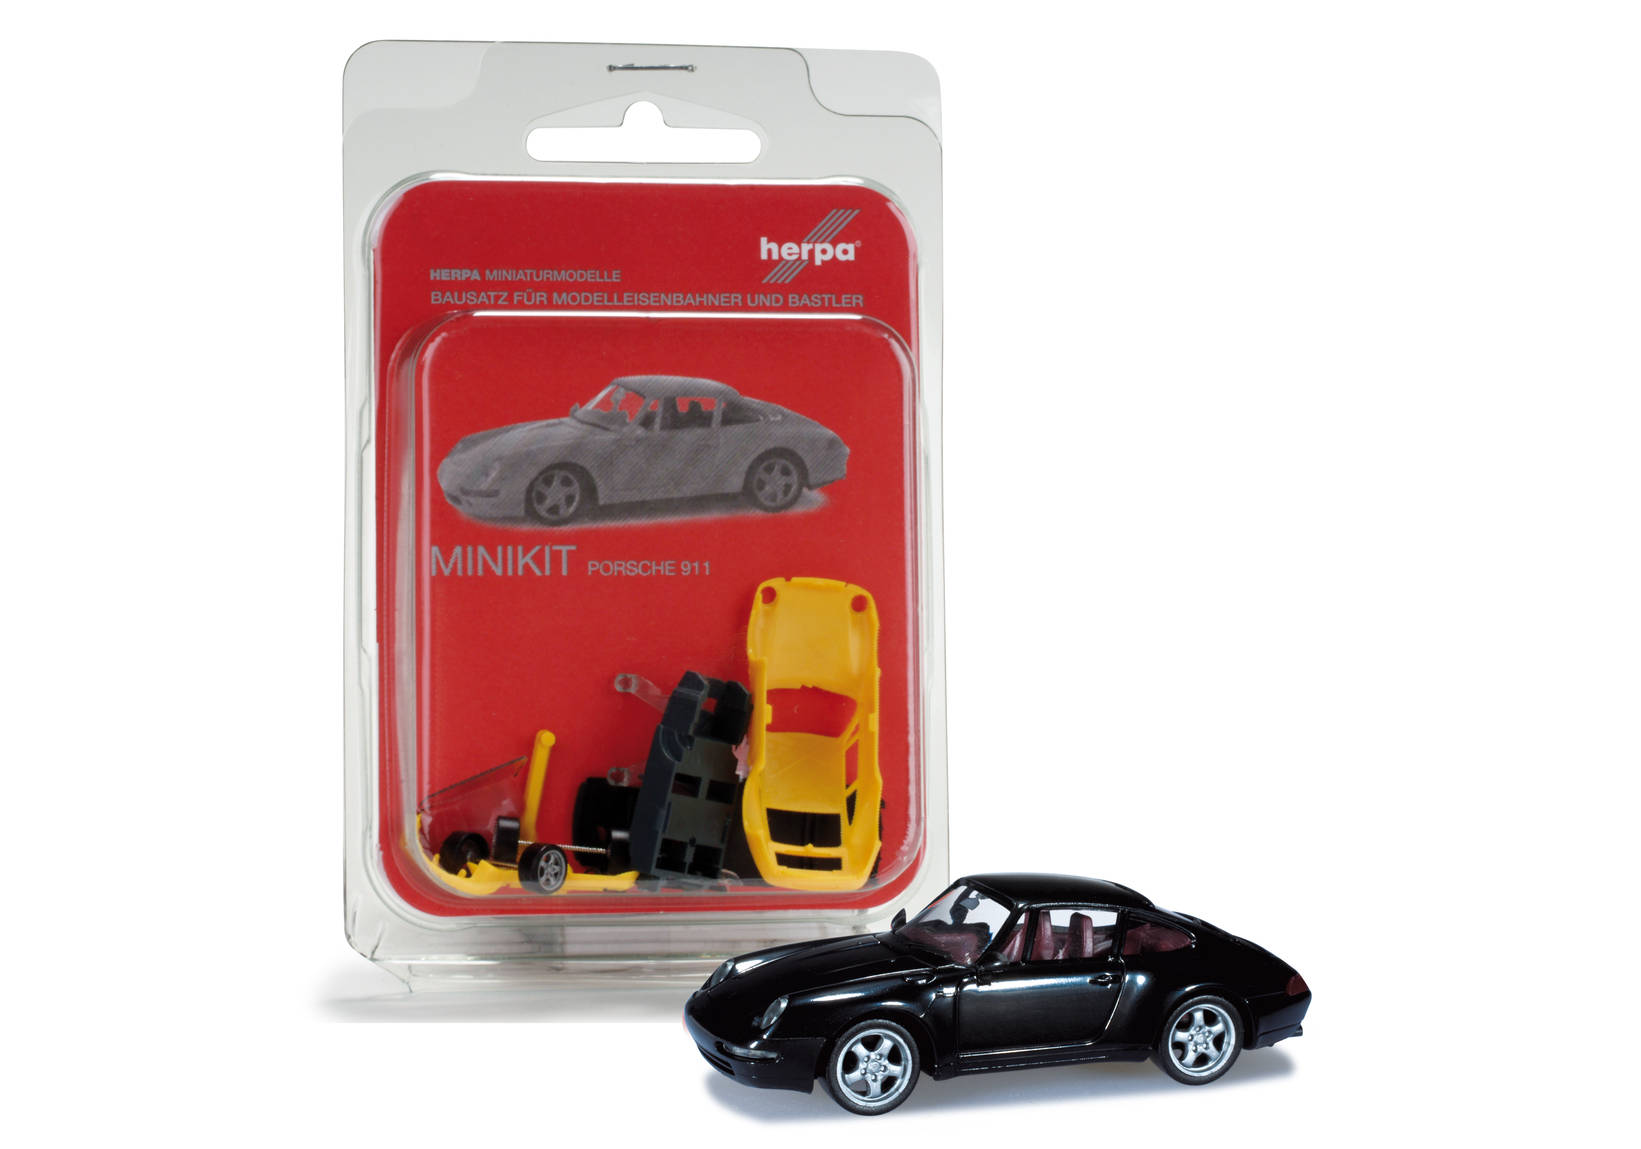 Herpa MiniKit: Porsche 911 Carrera, brillant black